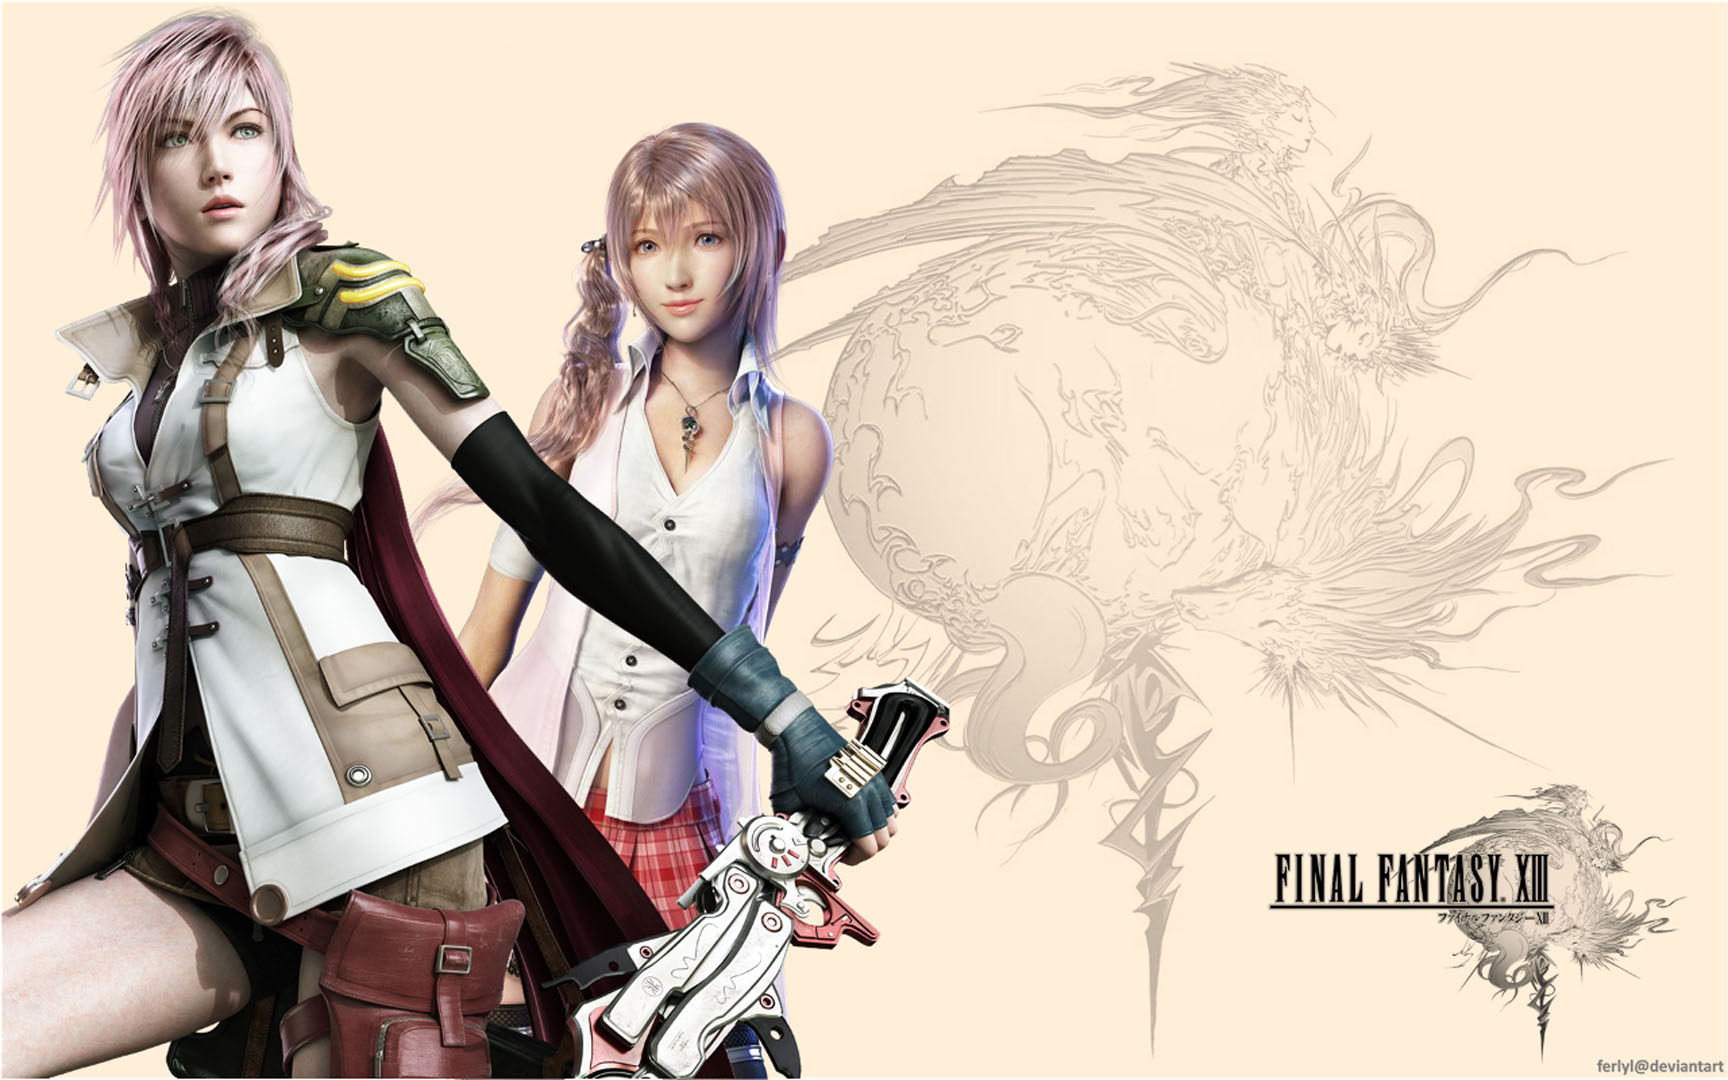 Serah And Lightning - Final Fantasy 13 Wallpaper